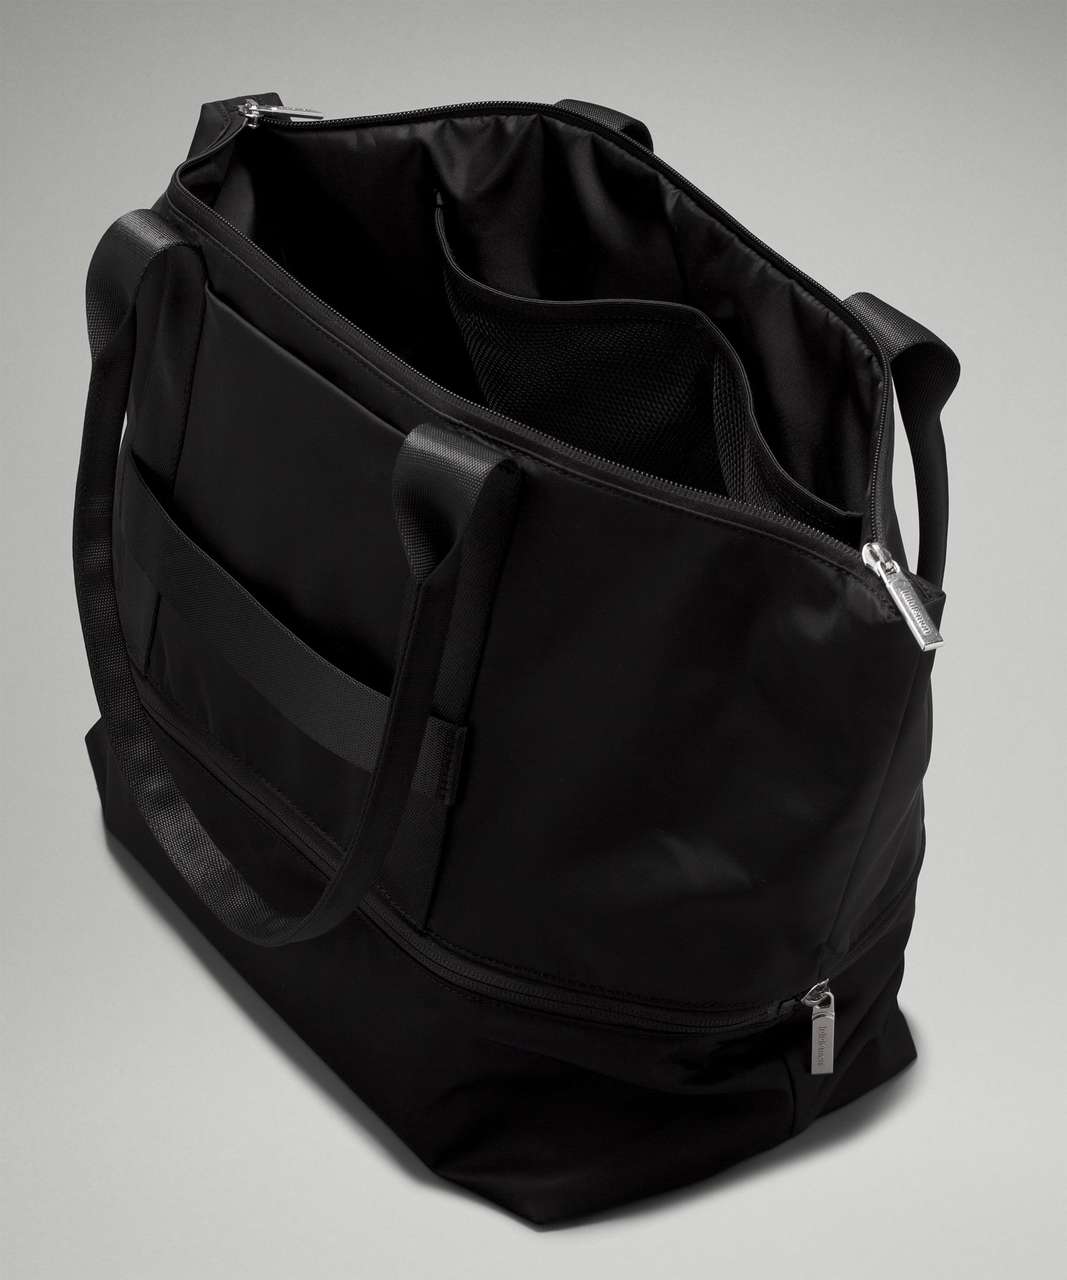 Lululemon City Adventurer Tote Bag 27L - Black